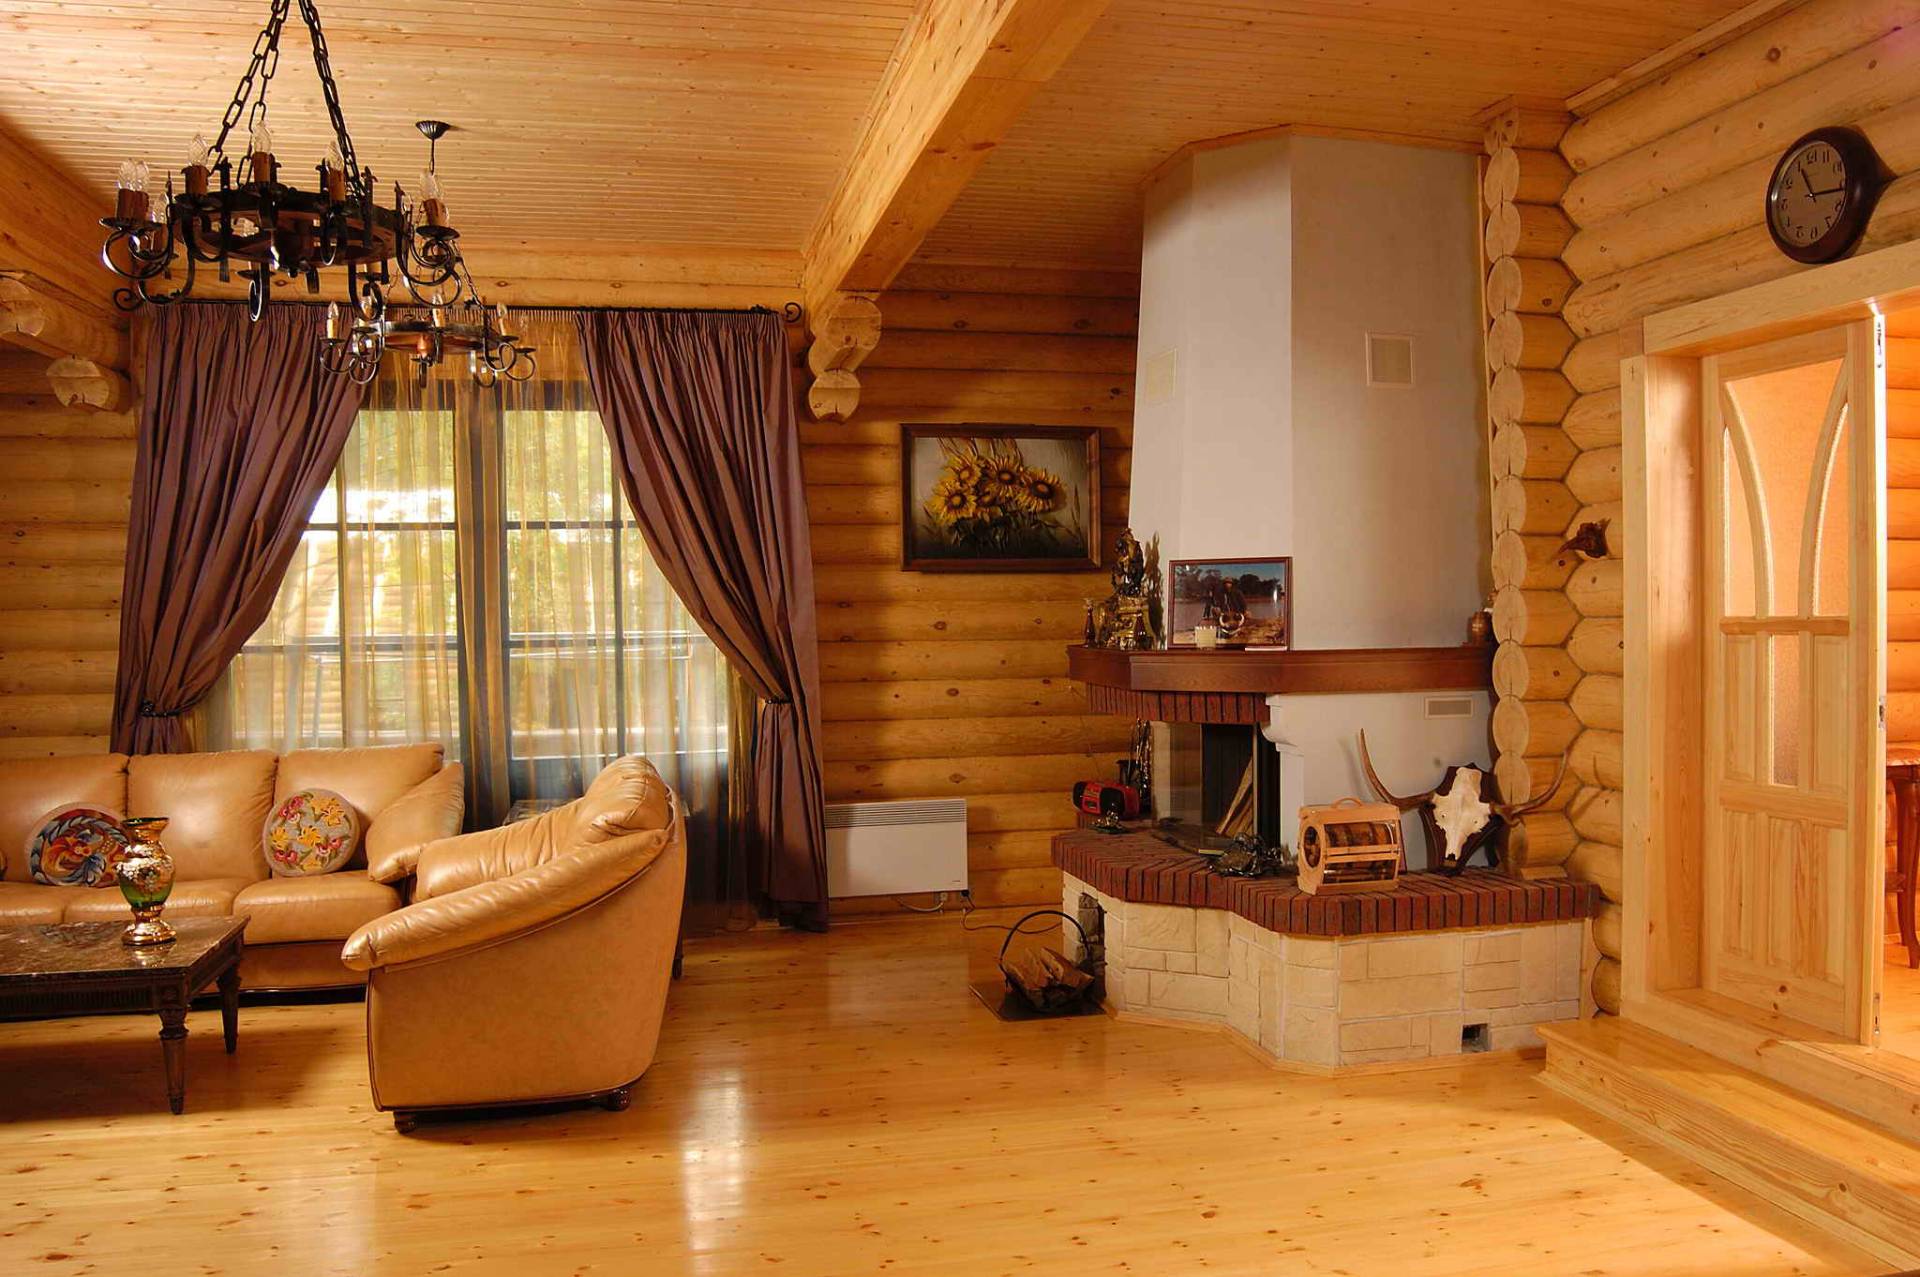 Как устроен дизайн интерьера деревянного дома?